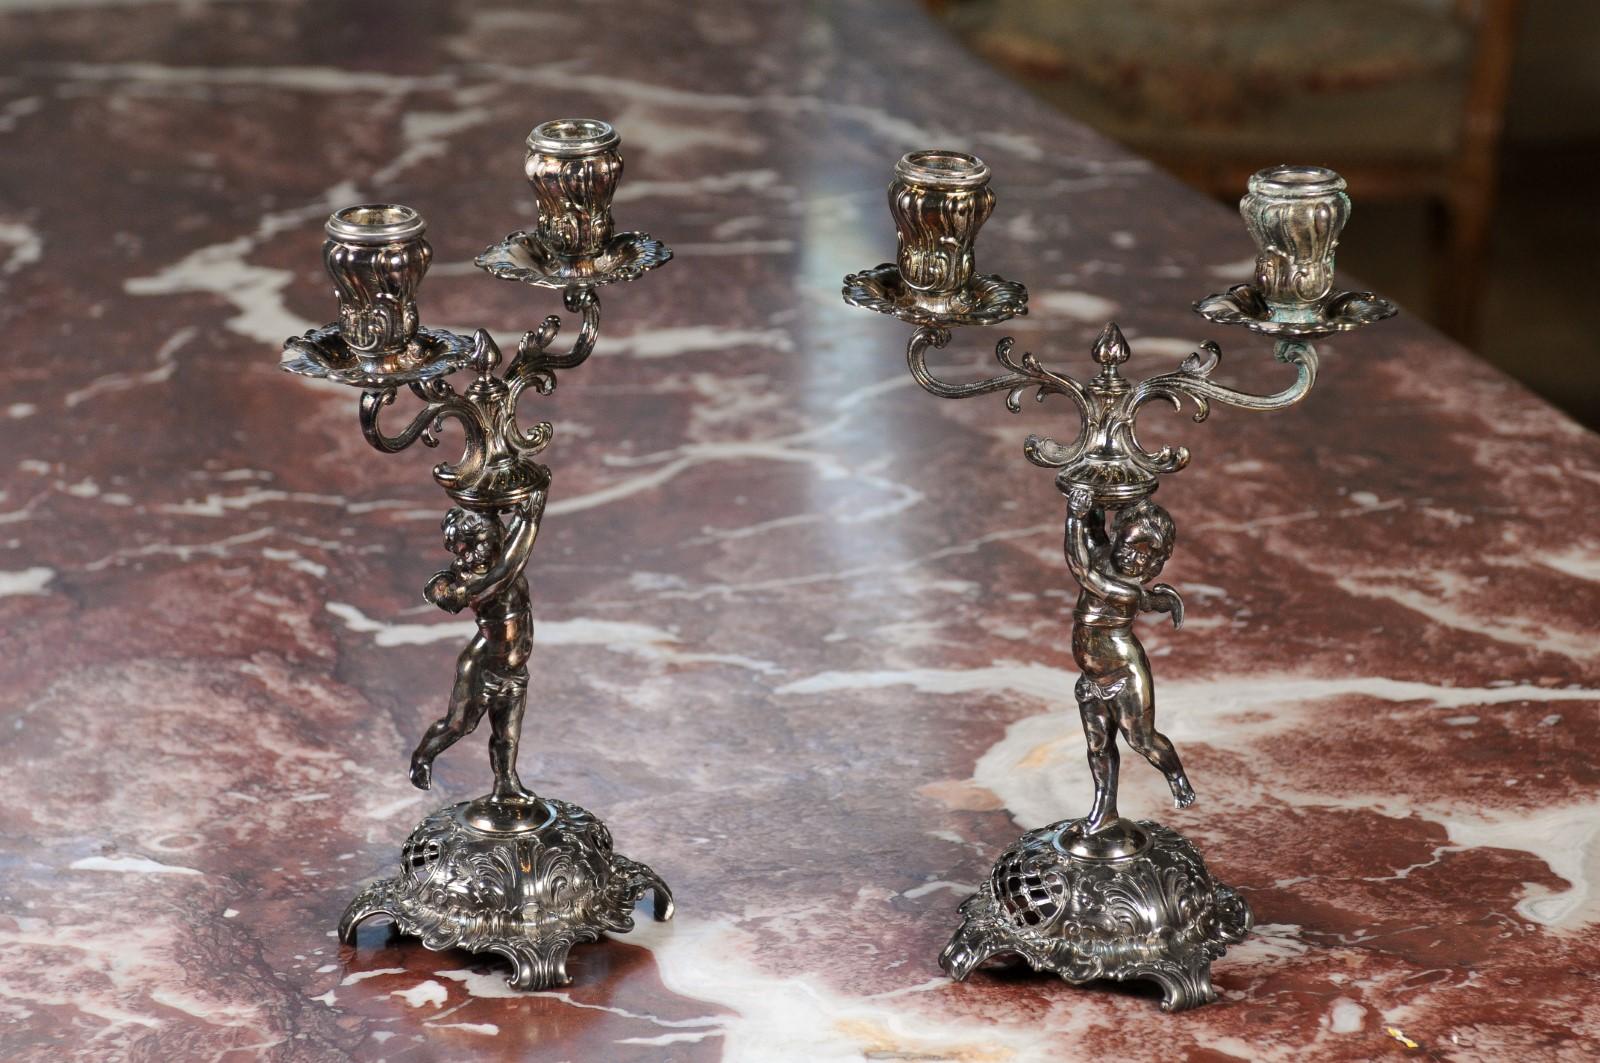 Paire de candélabres allemands Jugendstil de la fin du 19e siècle, en métal argenté, provenant de la Wurtemberg Metalware Factory, avec des chérubins tenant les bobèches. Née en Allemagne dans la Württembergische Metallwarenfabrik (WMF) au cours du